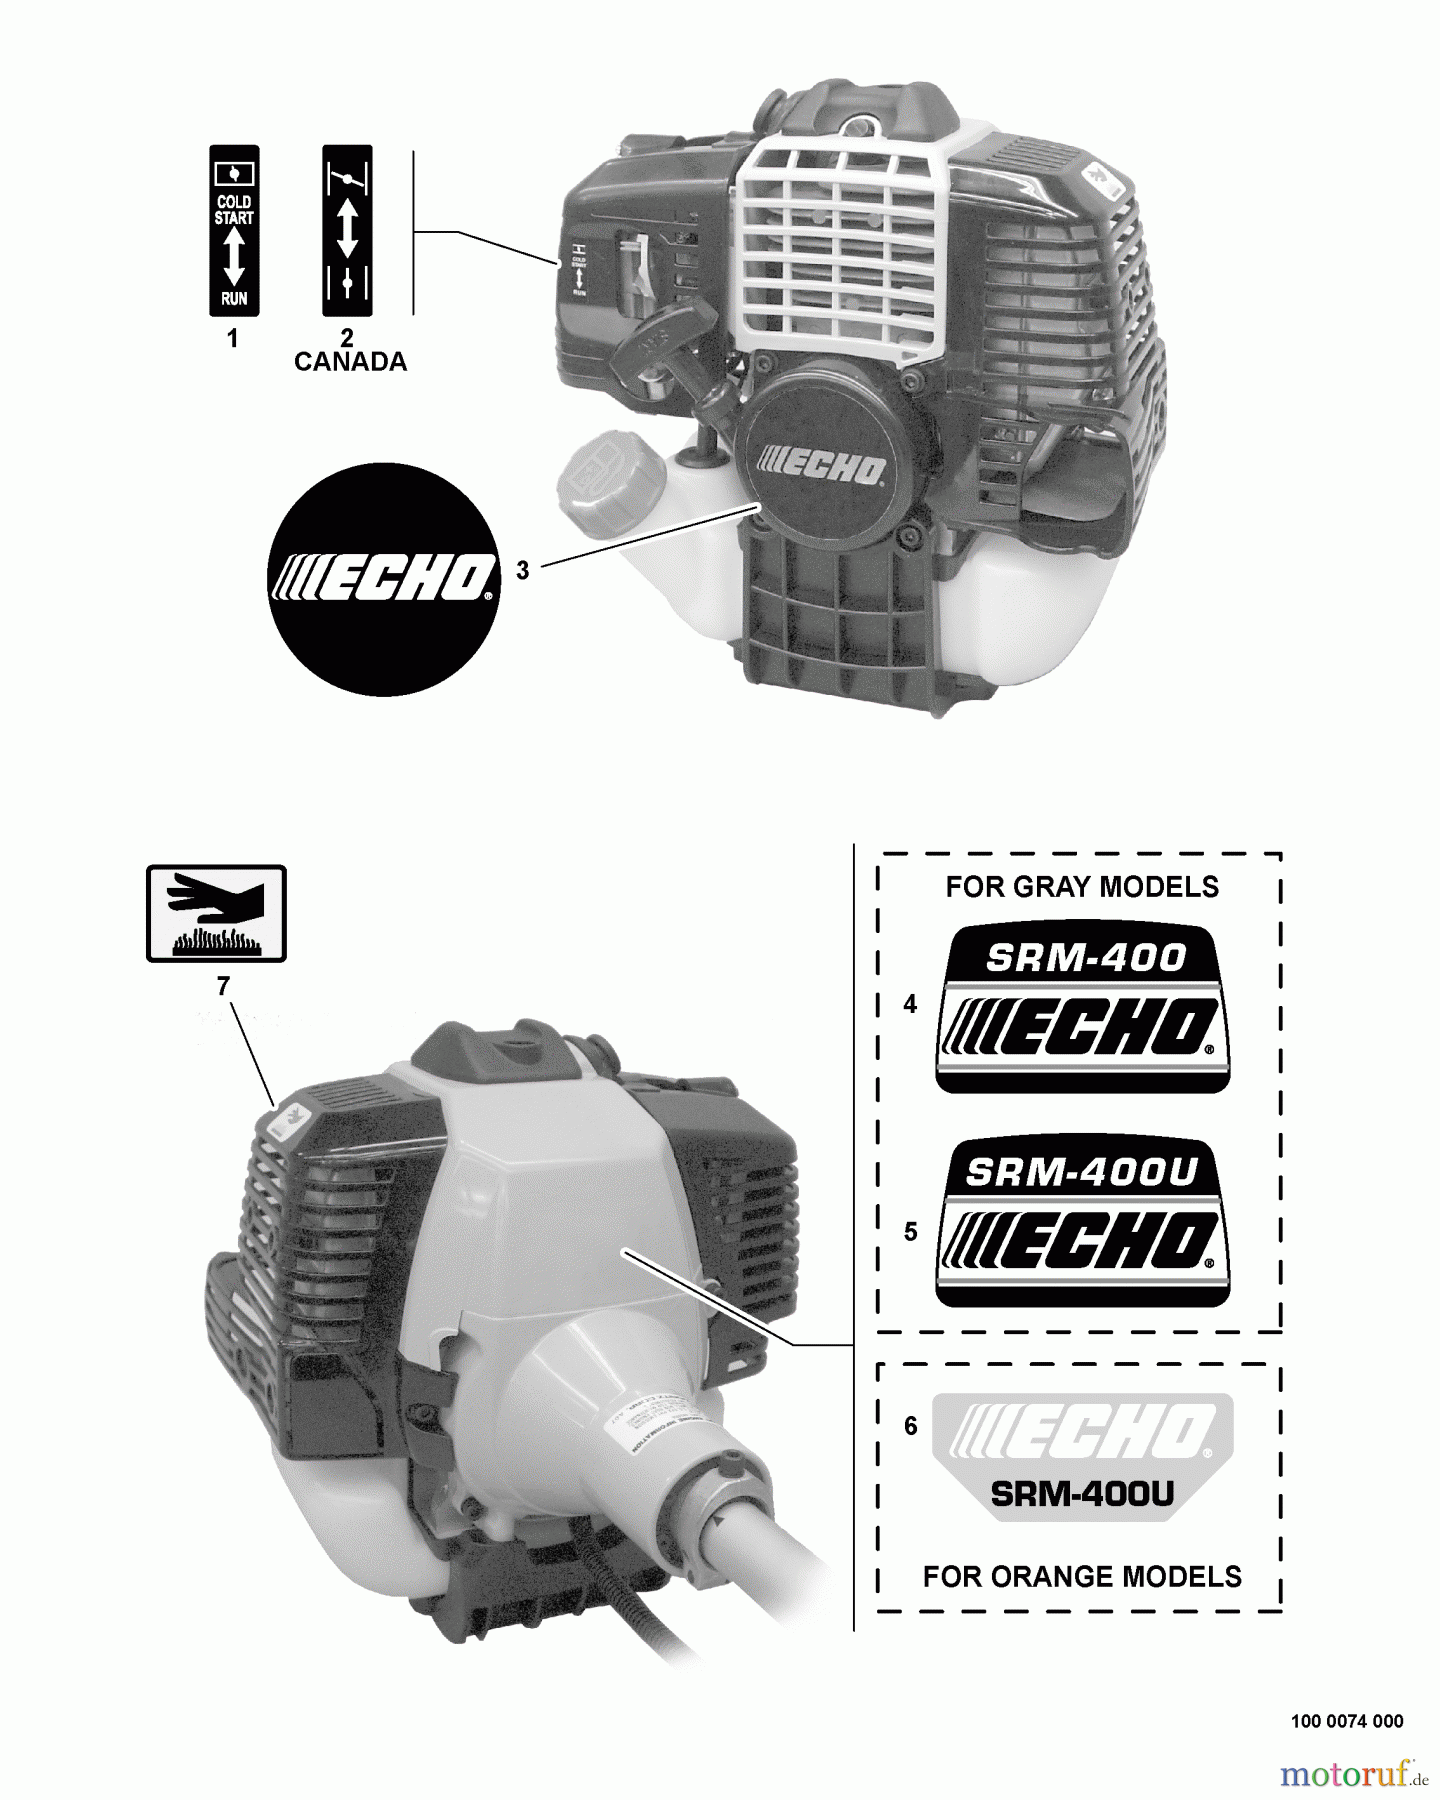  Echo Trimmer, Faden / Bürste SRM-400U - Echo String Trimmer/Brush Cutter, S/N:S16004001495 - S1600499999 Labels